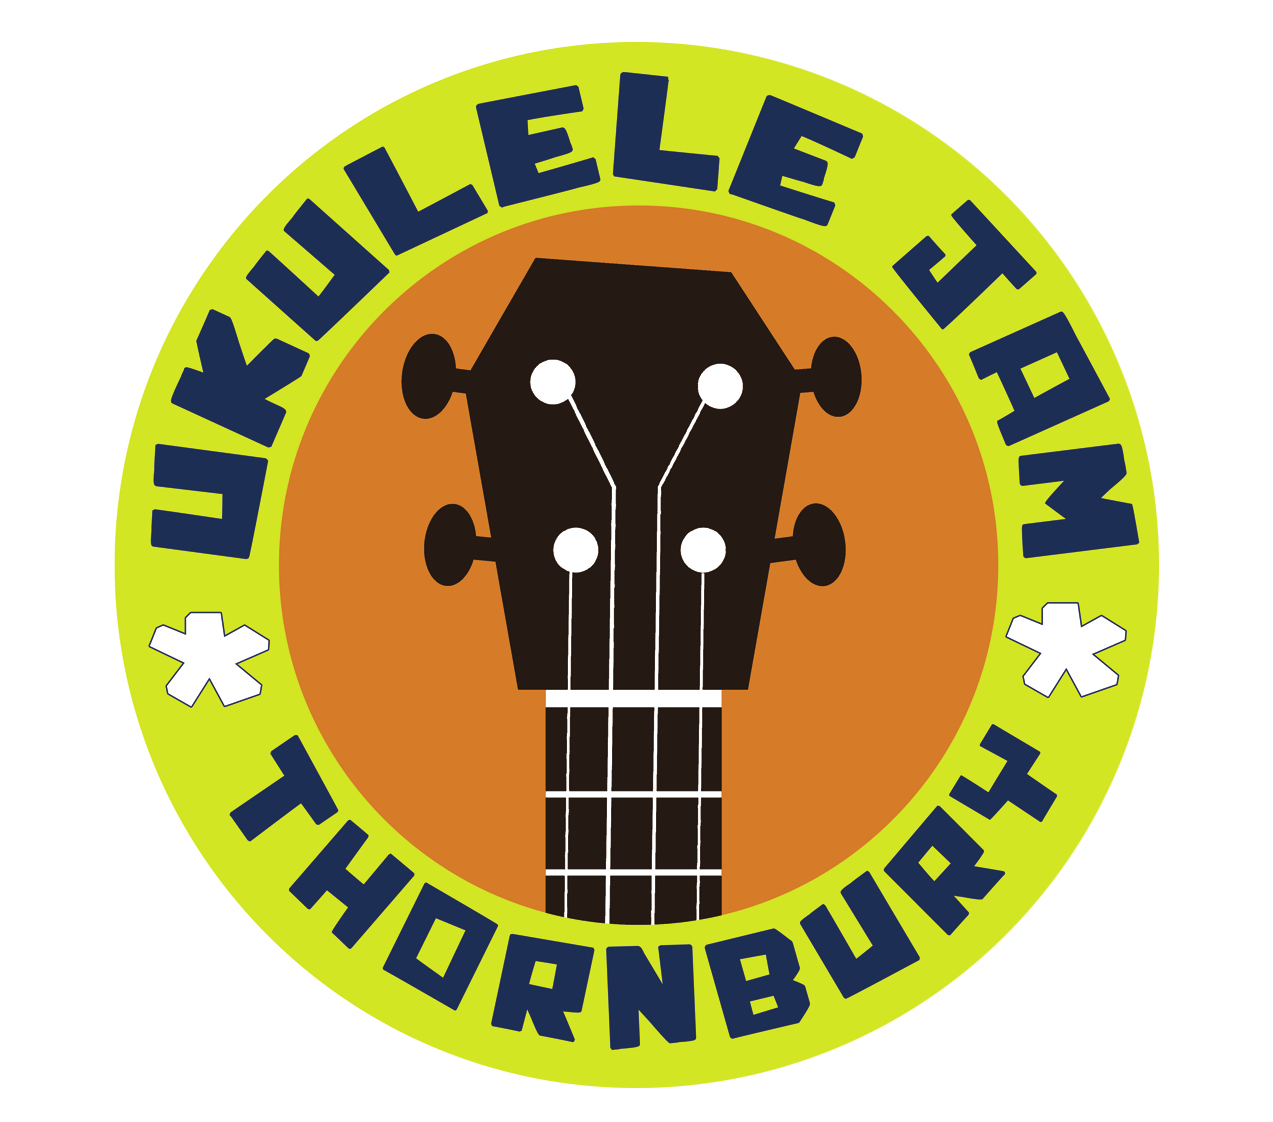 Ukulele Jam Thornbury to perform at Dursley's Kingshill House - Gazette Series